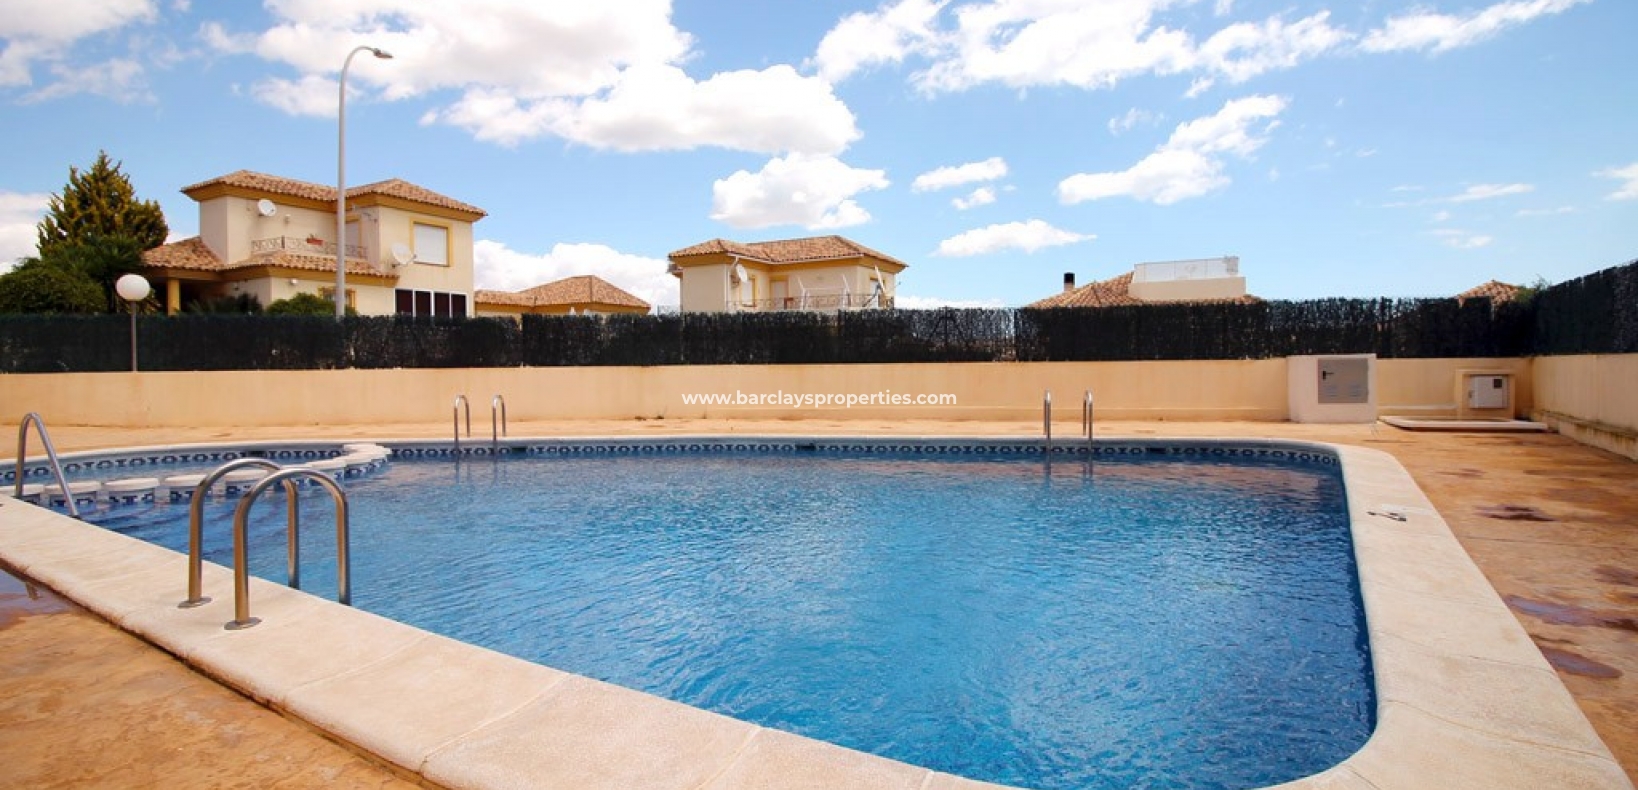 Herenhuis stijl woning te koop in La Marina Alicante Spanje - zwembad